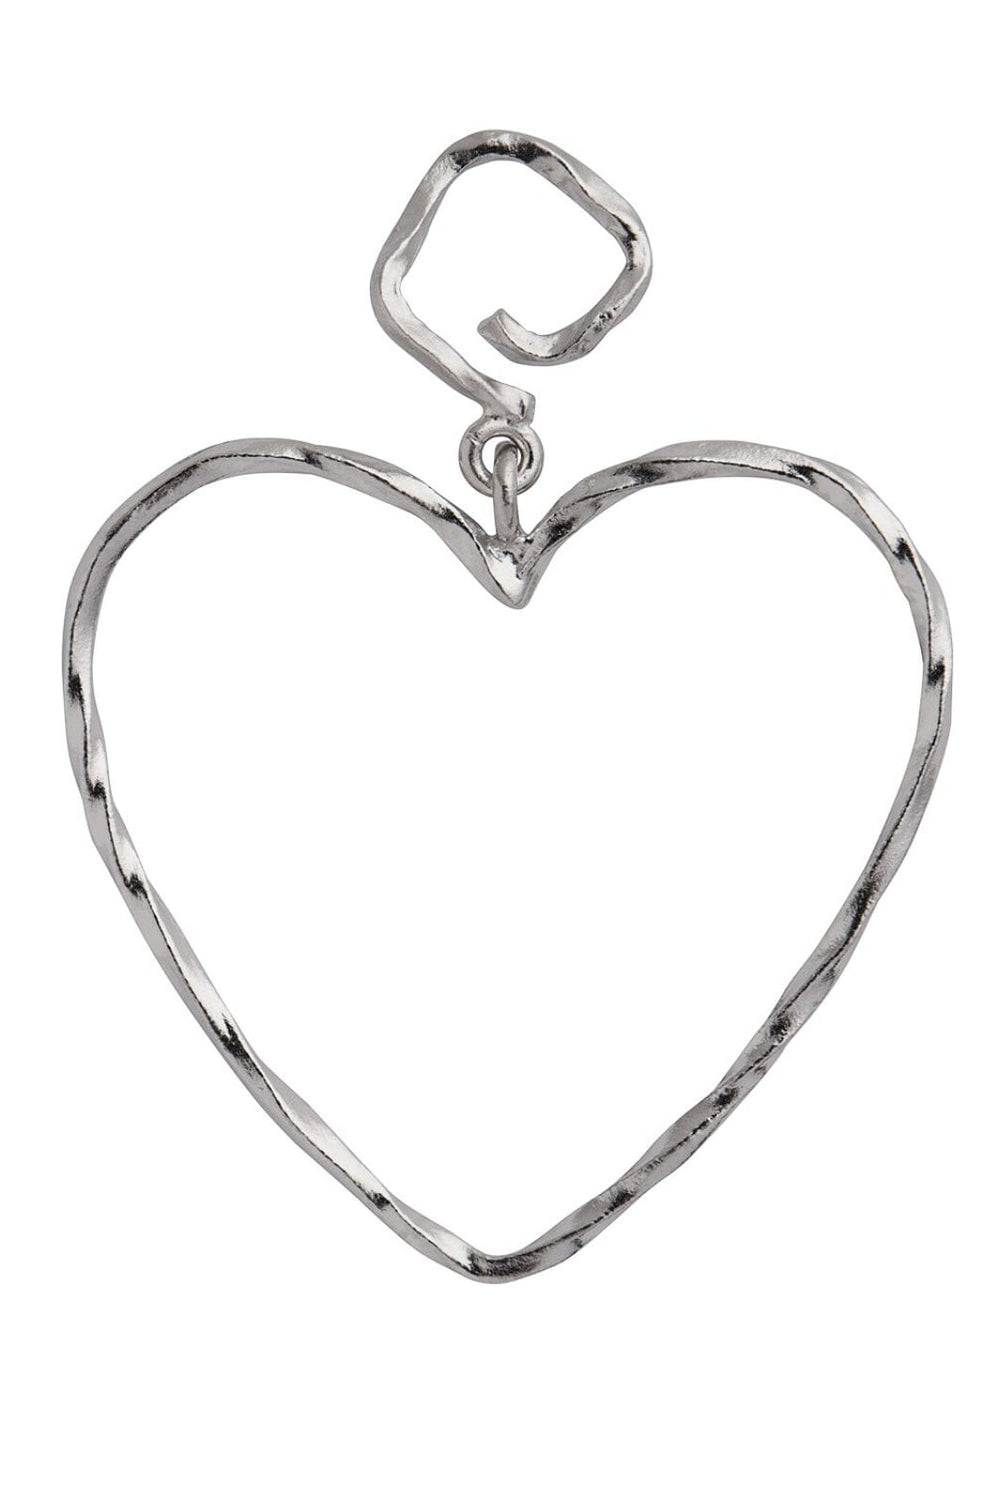 Forudbestilling - Stine A - Funky Heart Earring - Silver - 1317-00-S Øreringe 